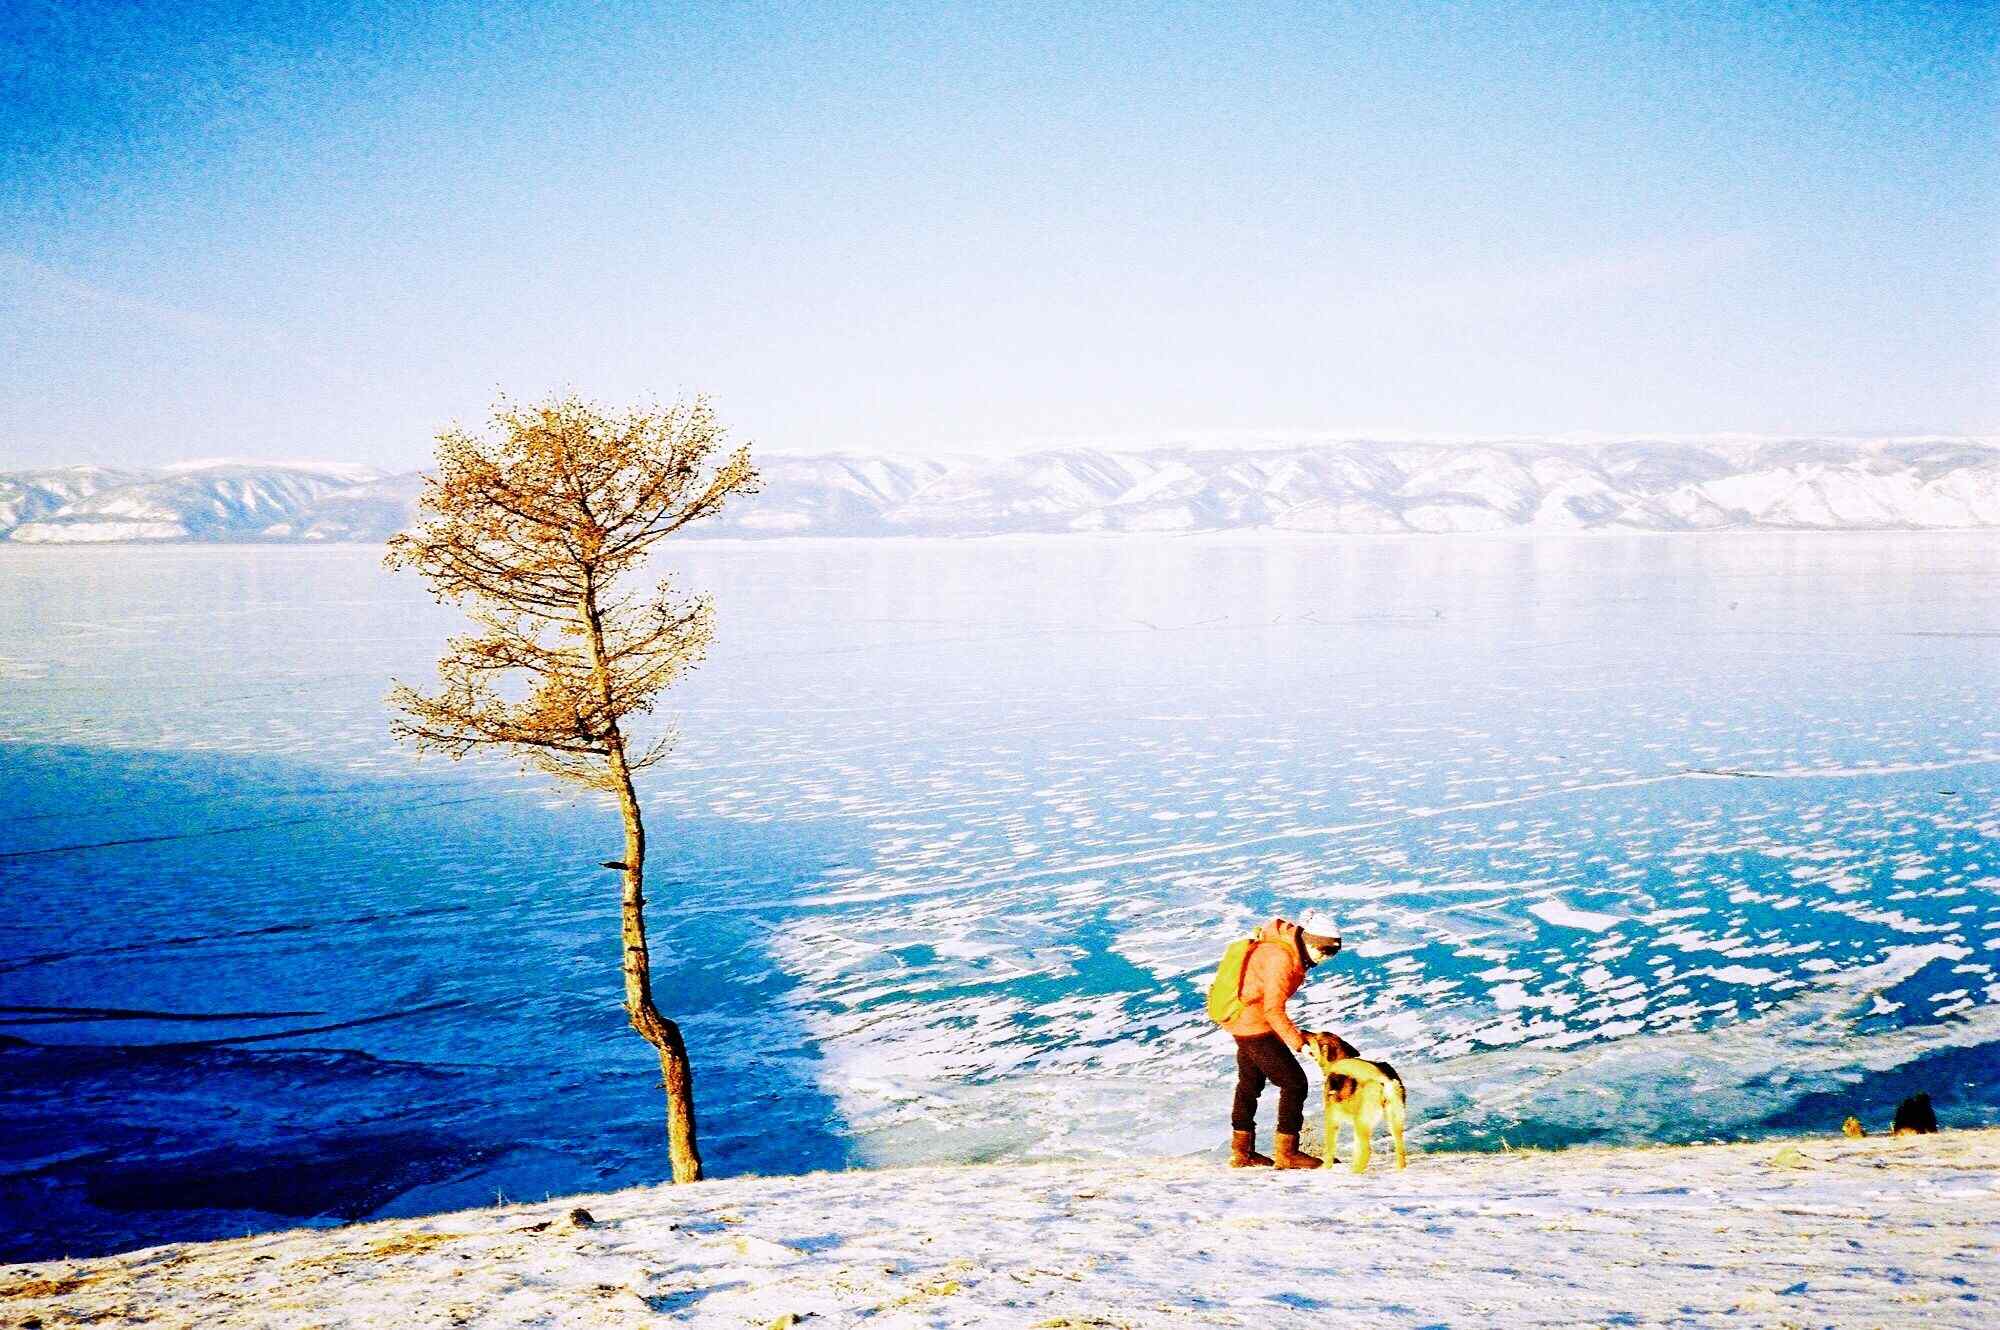 贝加尔湖特色风景图片护眼壁纸